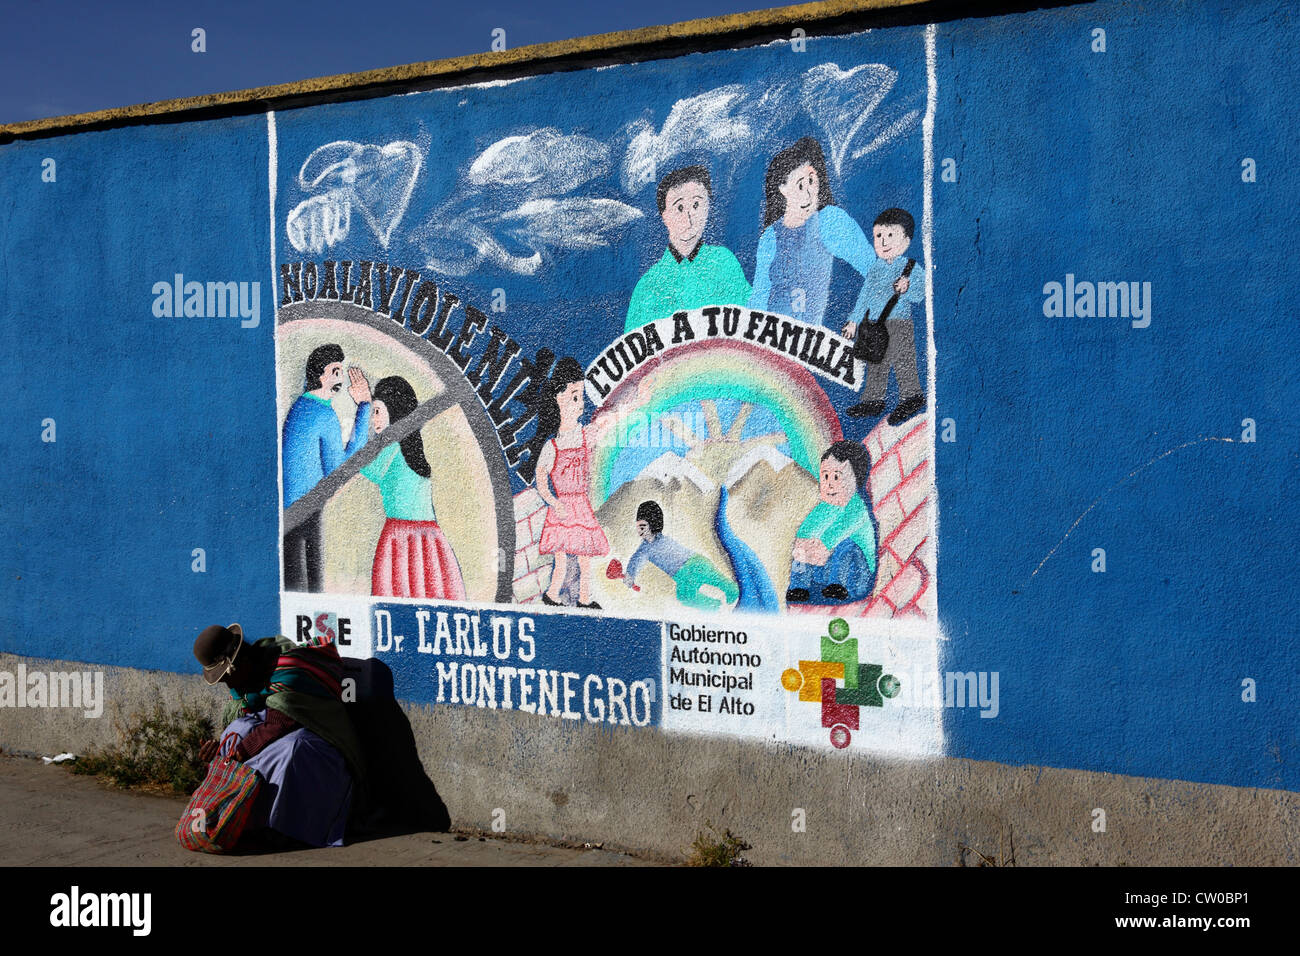 Mujer nativa sentada en el pavimento junto al mural que es parte de una campaña para reducir el abuso doméstico y la violencia contra las mujeres, El Alto, Bolivia Foto de stock